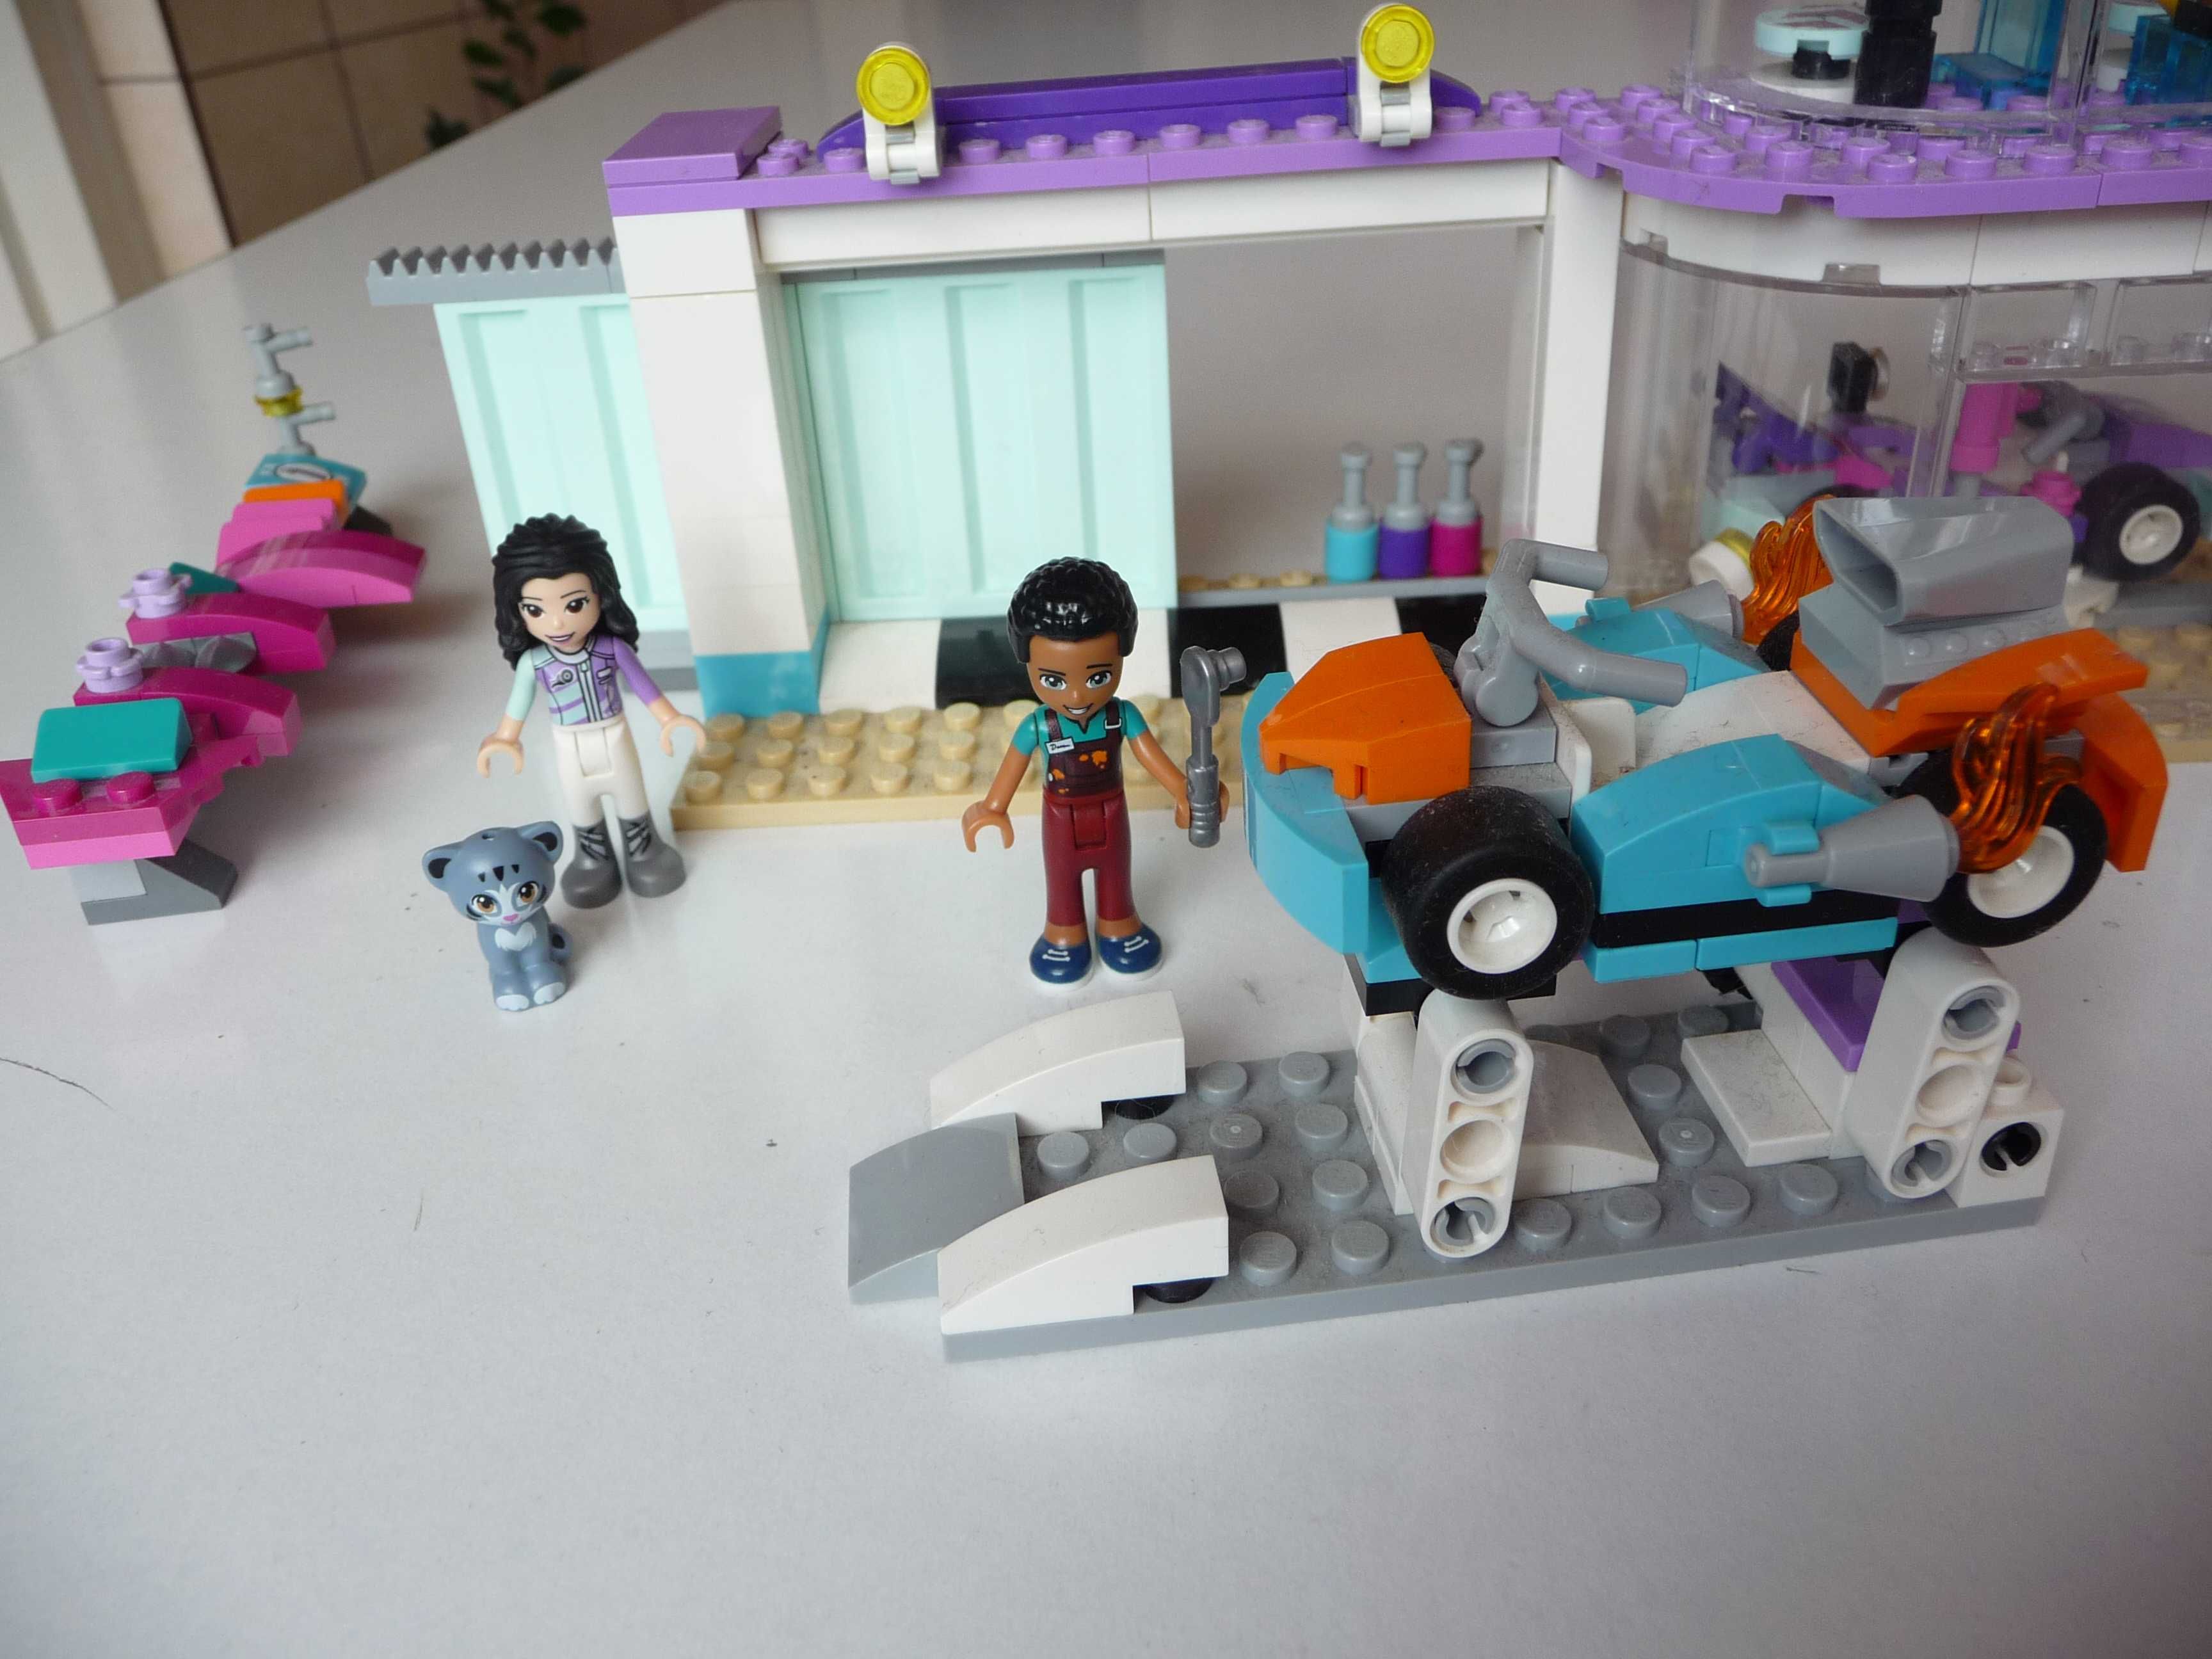 Lego Friends Kreatywny warsztat 41351